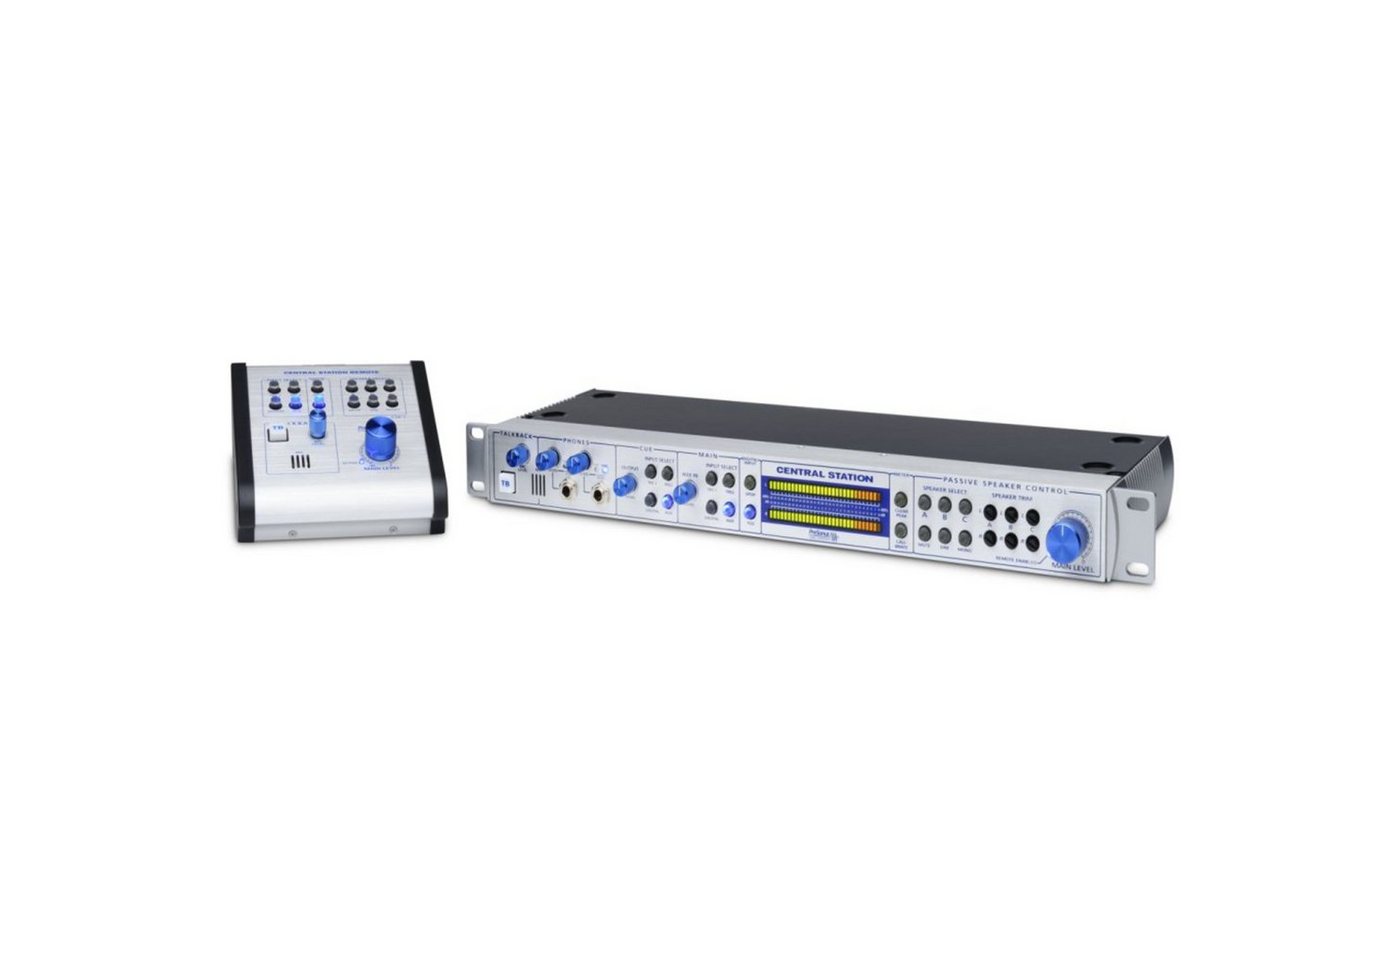 Presonus Audioverstärker (Central Station Plus inkl. CSR-1 Remote - Monitor Controller) von Presonus